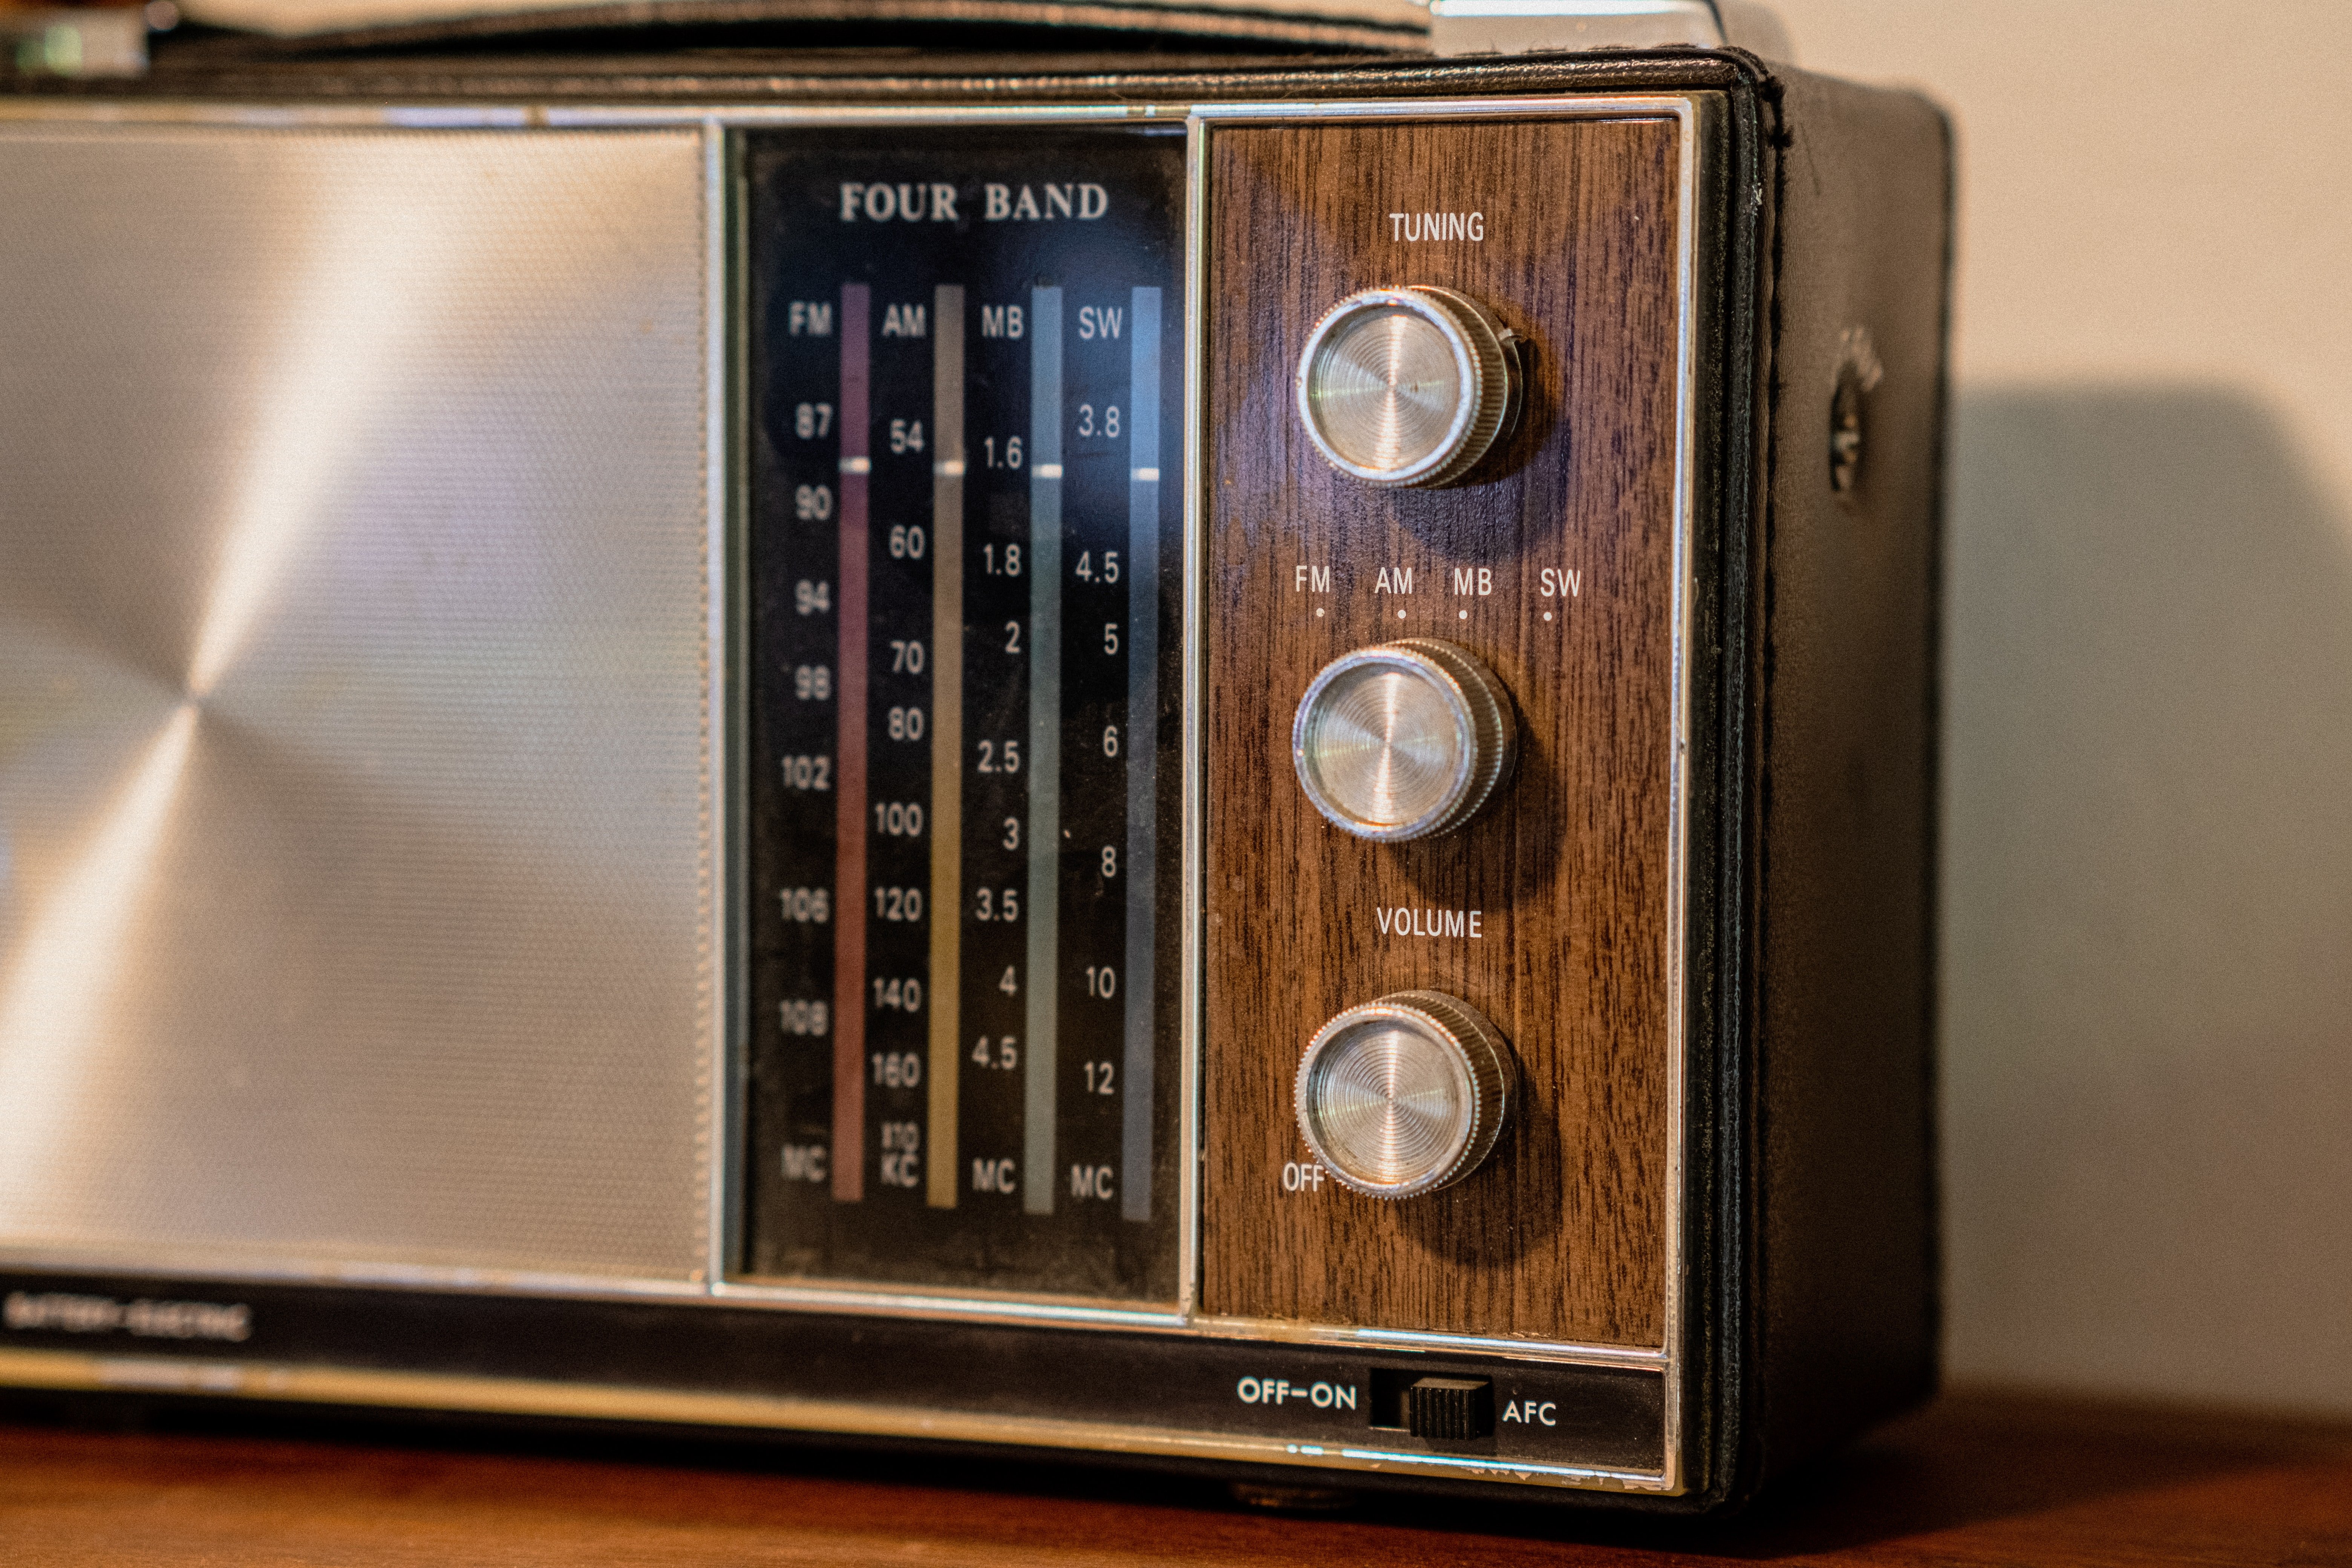 Carl a trouvé une vieille radio dans sa grange | Source : Unsplash